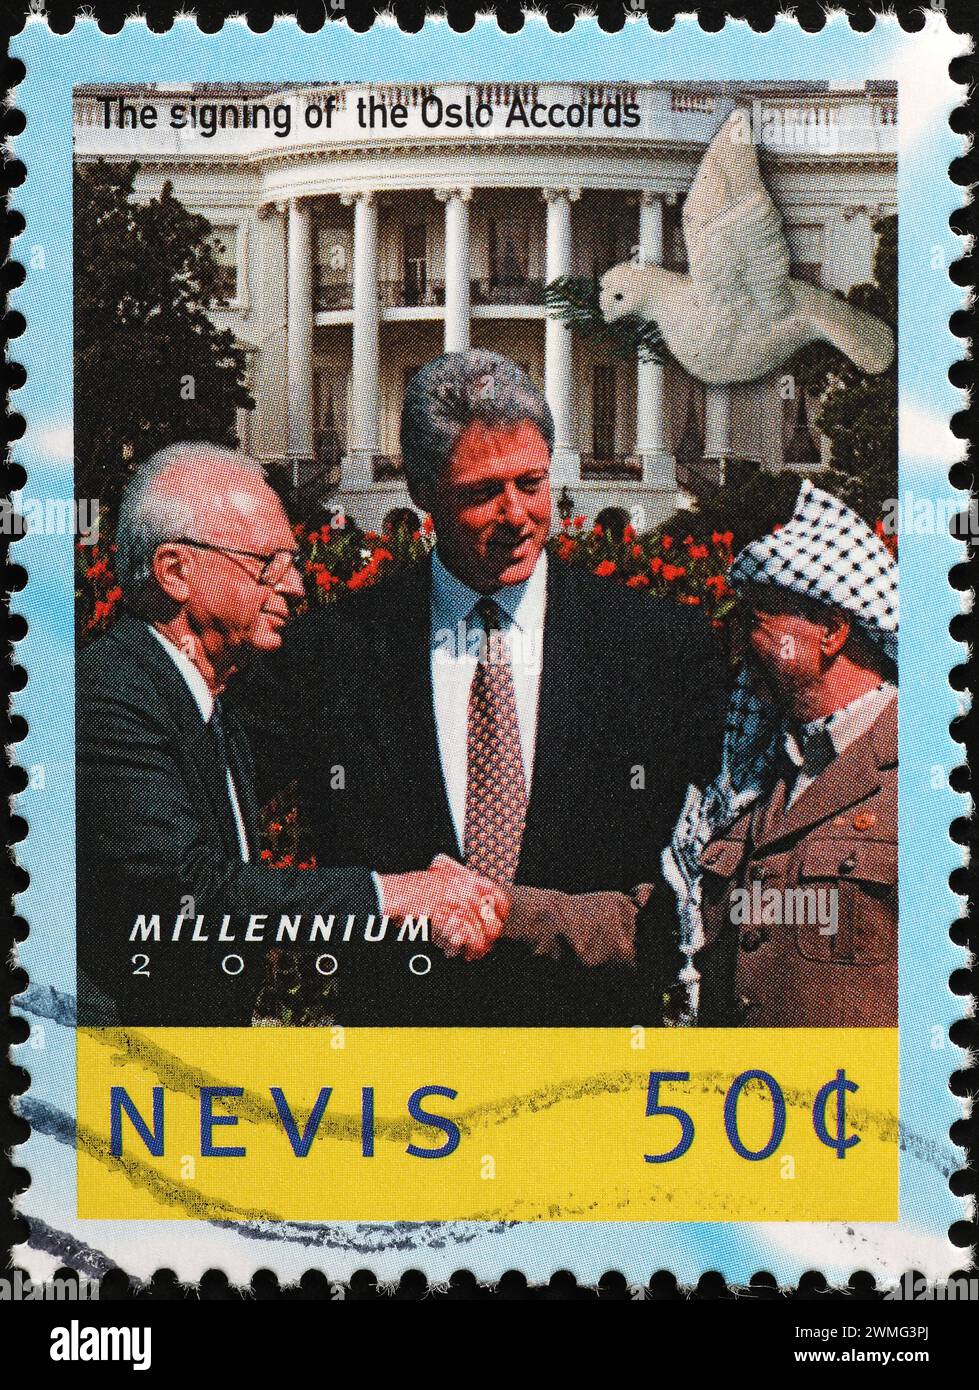 Unterzeichnung der Oslo-Vereinbarungen zwischen Rabin und Arafat auf Briefmarken Stockfoto